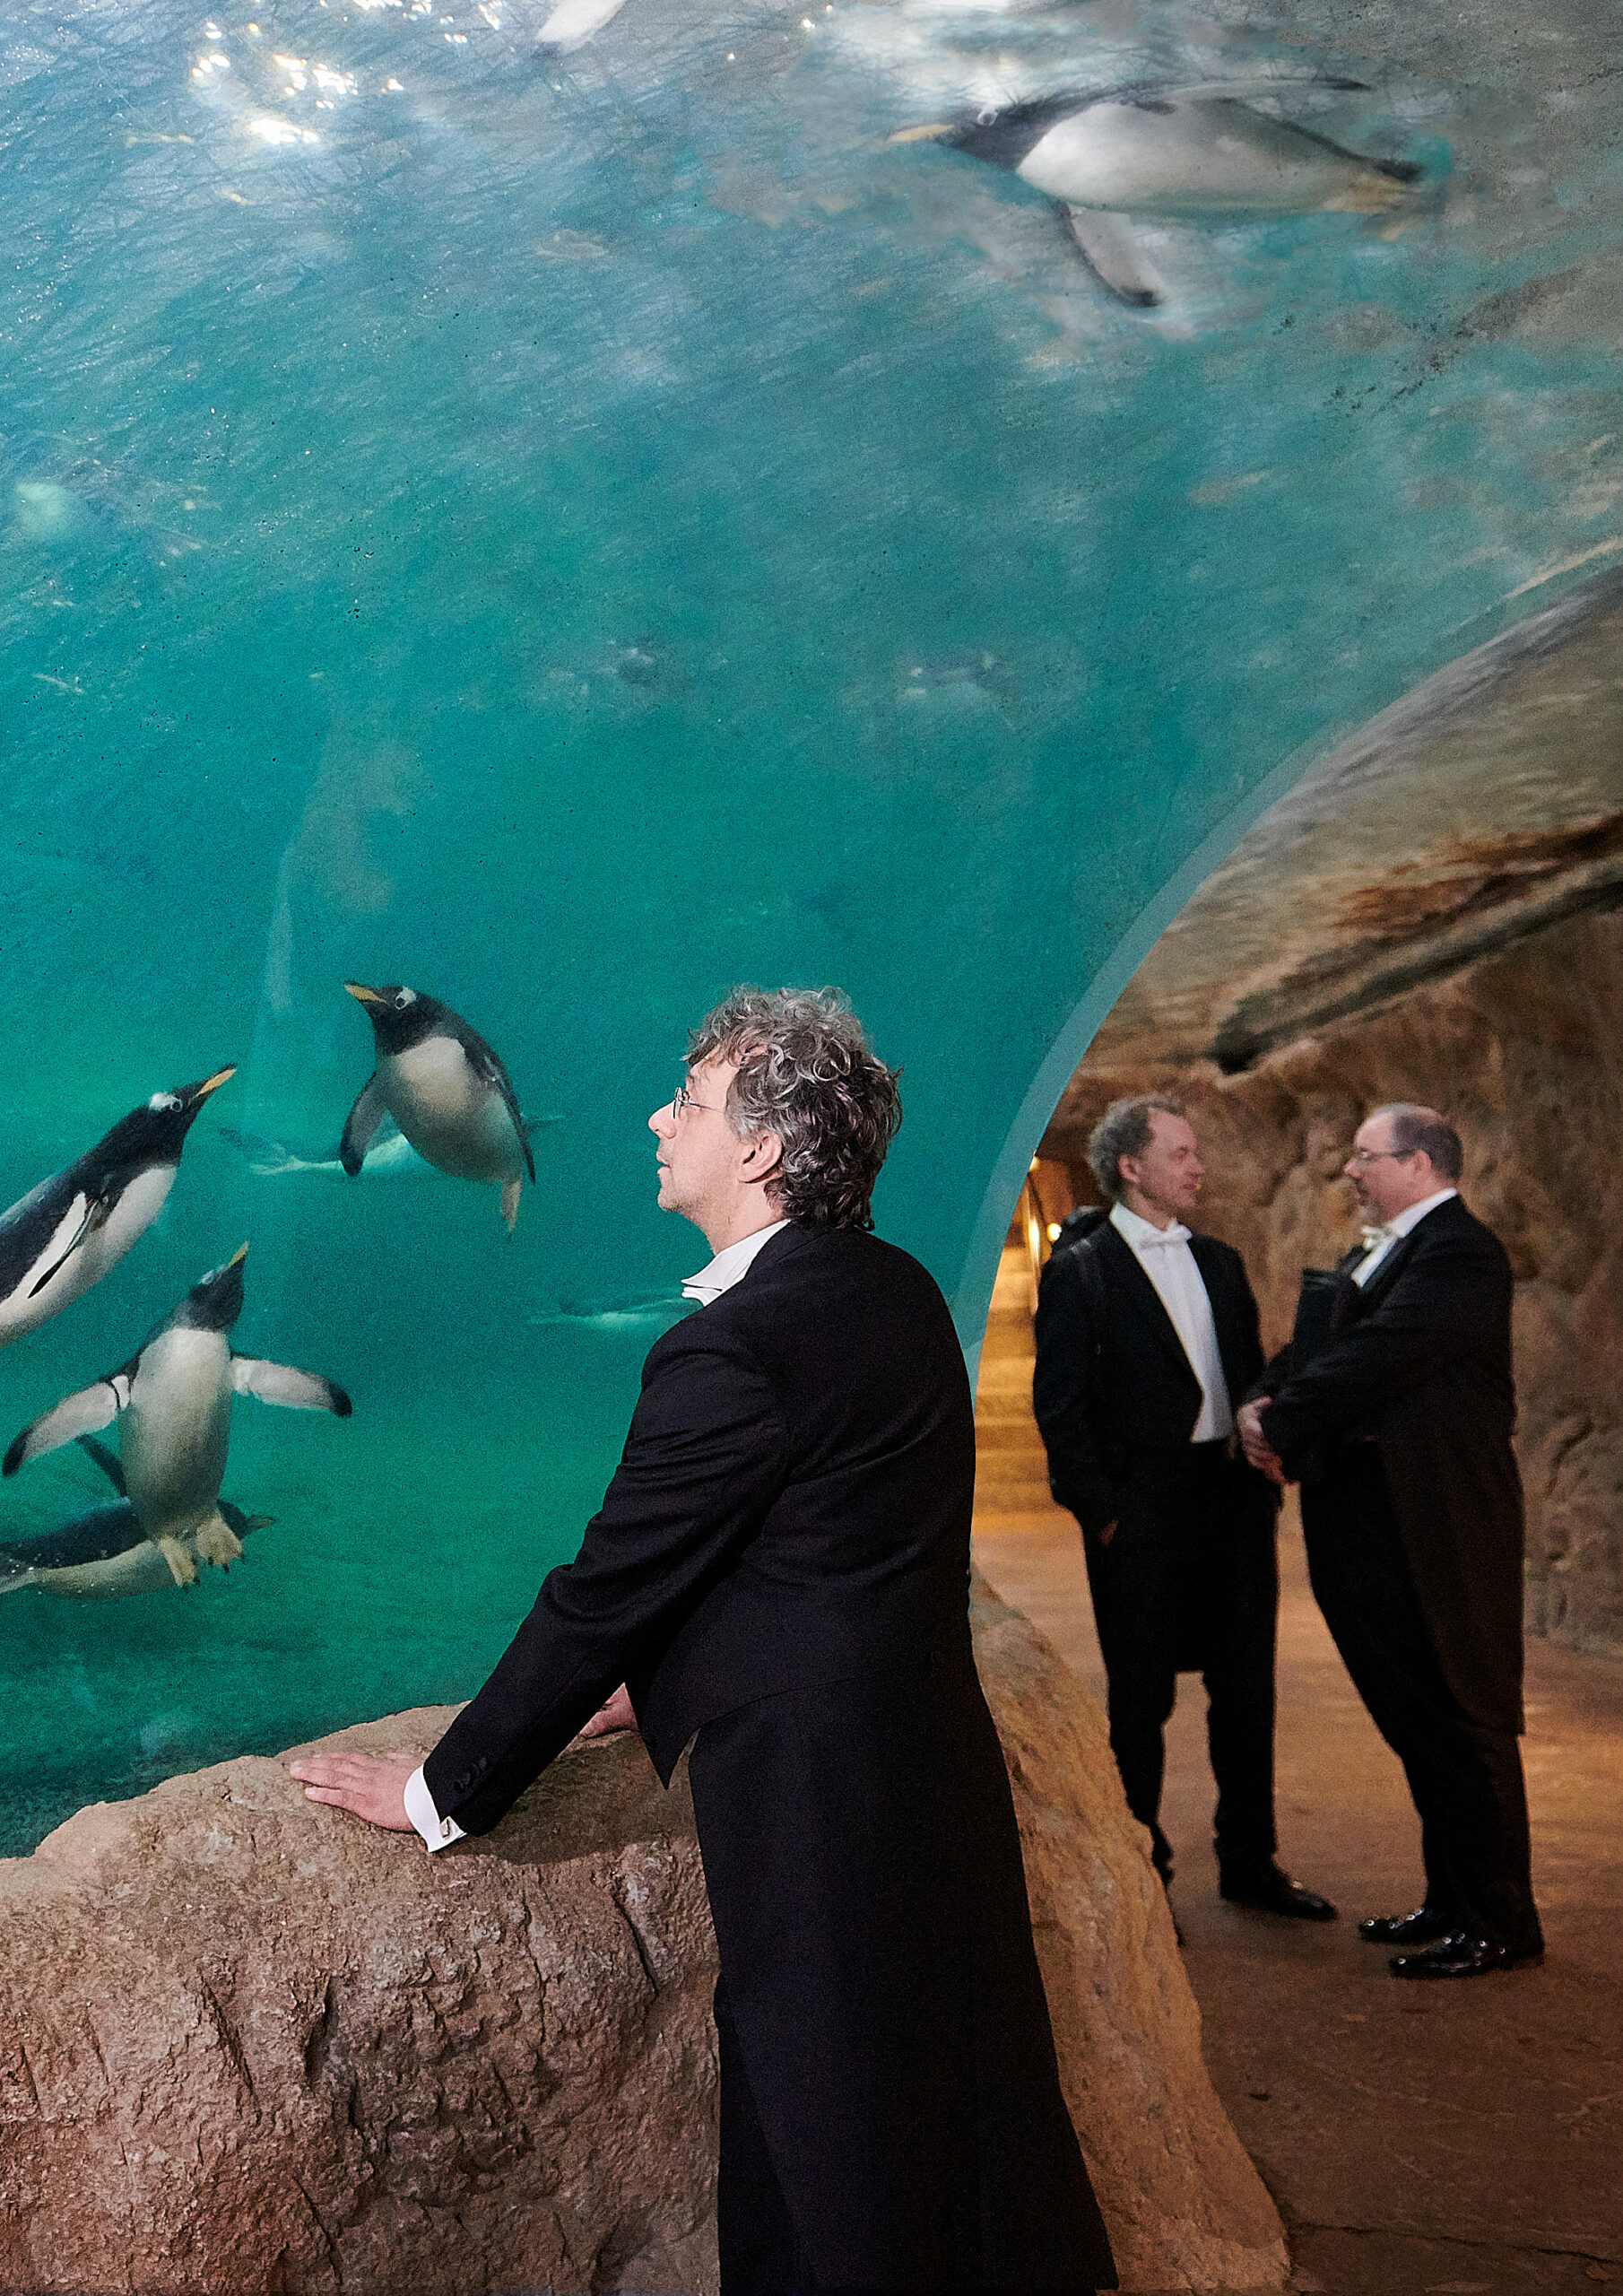 Foto 4 entstand im Pinguinehaus des Wuppertaler Zoos. Im Vordergrund beobachtet ein Musiker Pinguine beim schwimmen. Im Hintergrund sind zwei weitere Msuiker ins Gespräch vertieft. Alle tragen ihre Konzertkleidung.